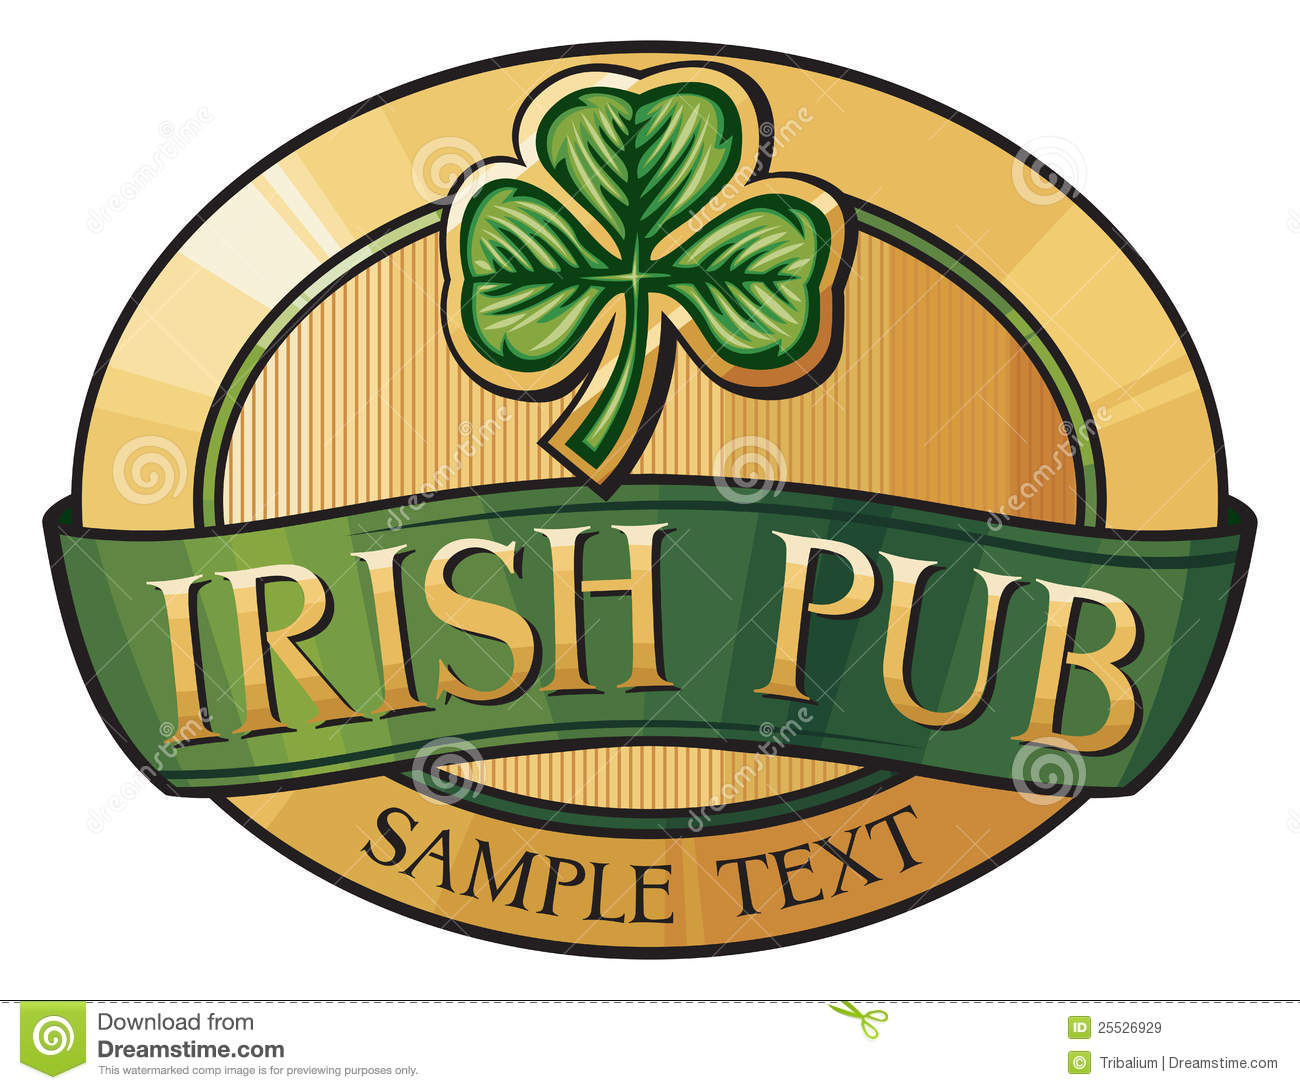 Irish Pub Royalty Free Stock Images   Image  25526929